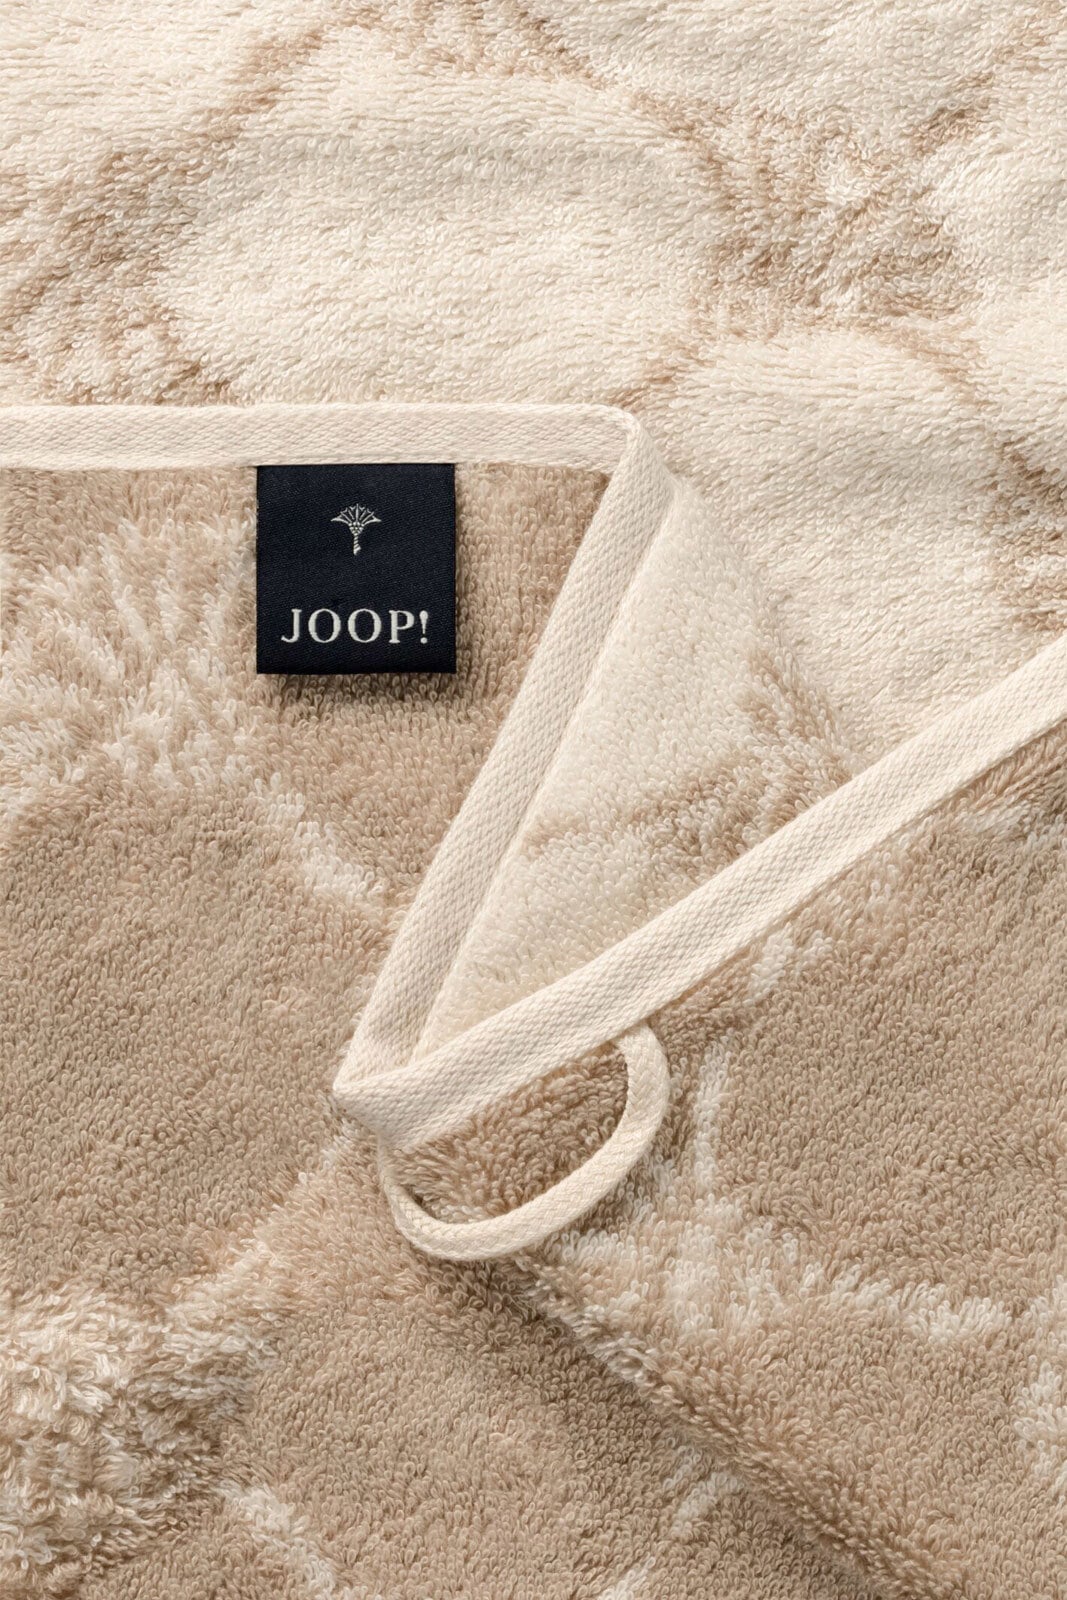 JOOP! Handtuch CLASSIC CORNFLOWER 50 x 100 cm creme 